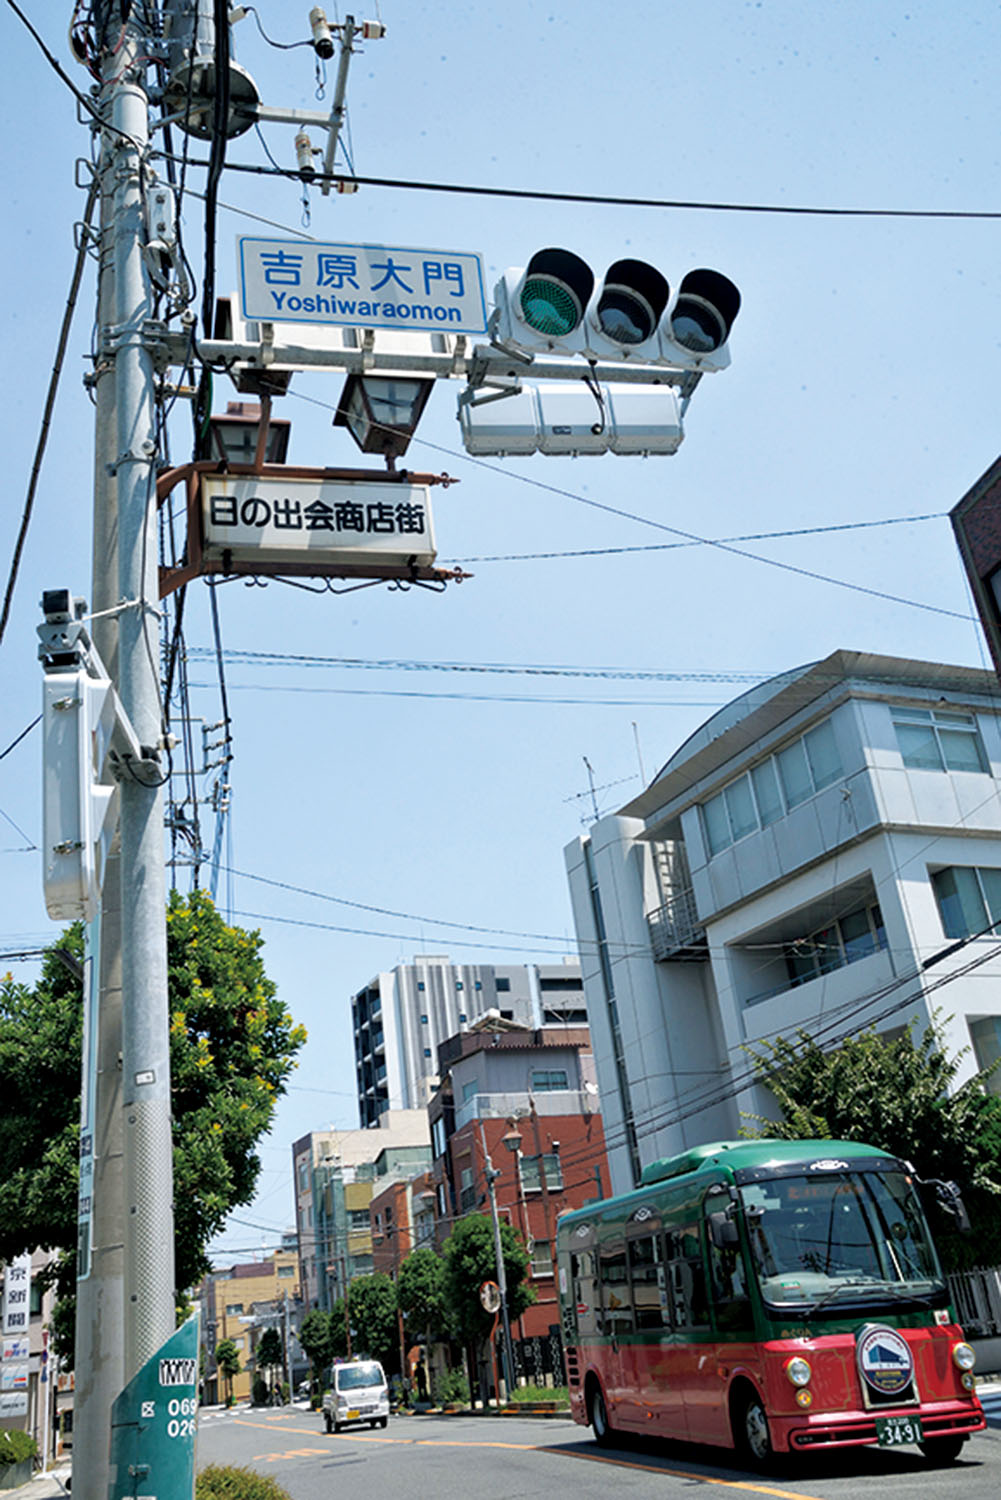 この商店街は、関東大震災後に「吉原大門通り日の出会」として誕生。